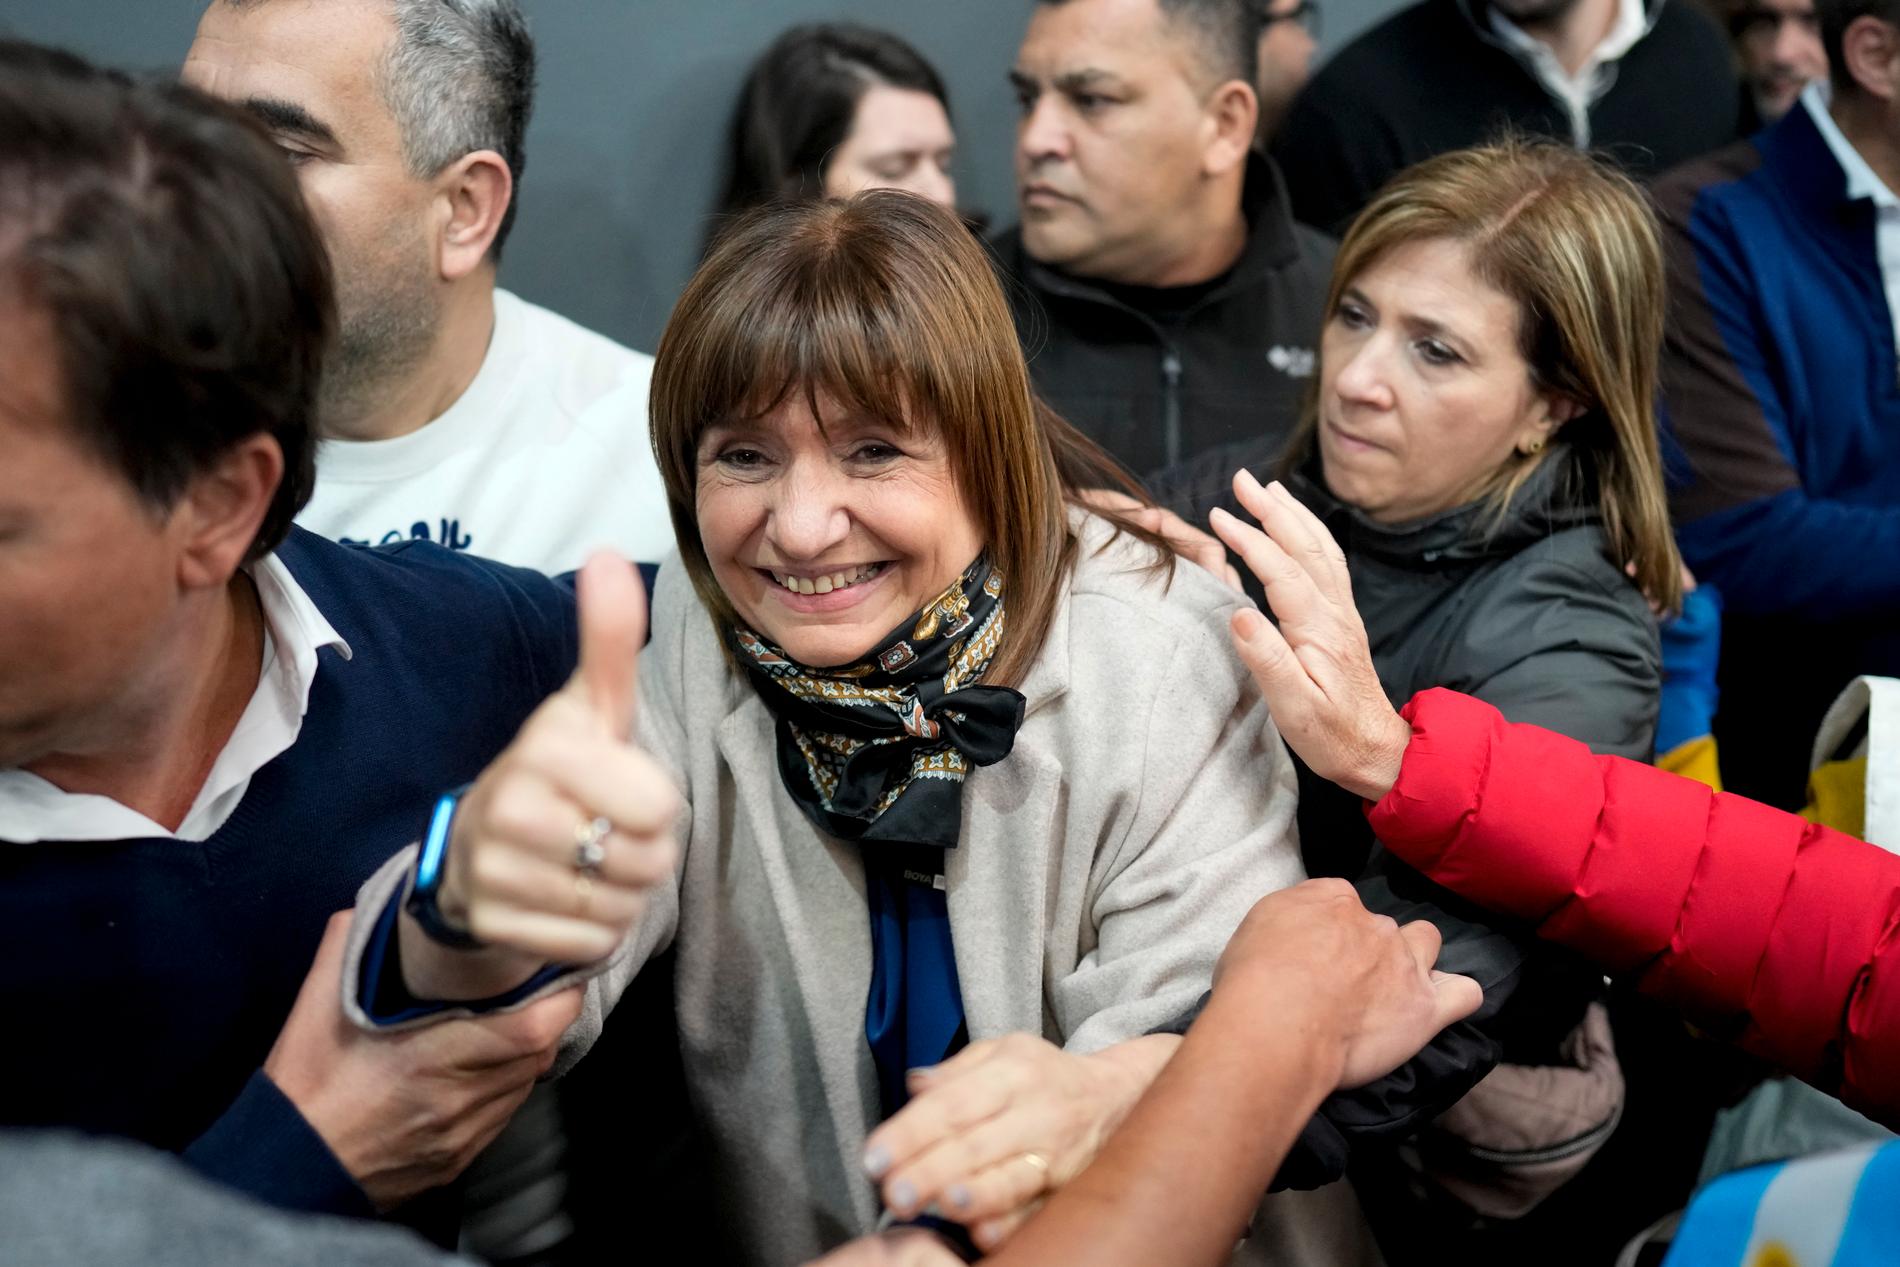 Patricia Bullrich kandiderar för högerkoalitionen Juntos por el Cambio och hade kunnat stå för förändringen som Argentinas befolkning längtar efter – om inte också hennes parti tidigare misslyckats med sin ekonomiska politik.6